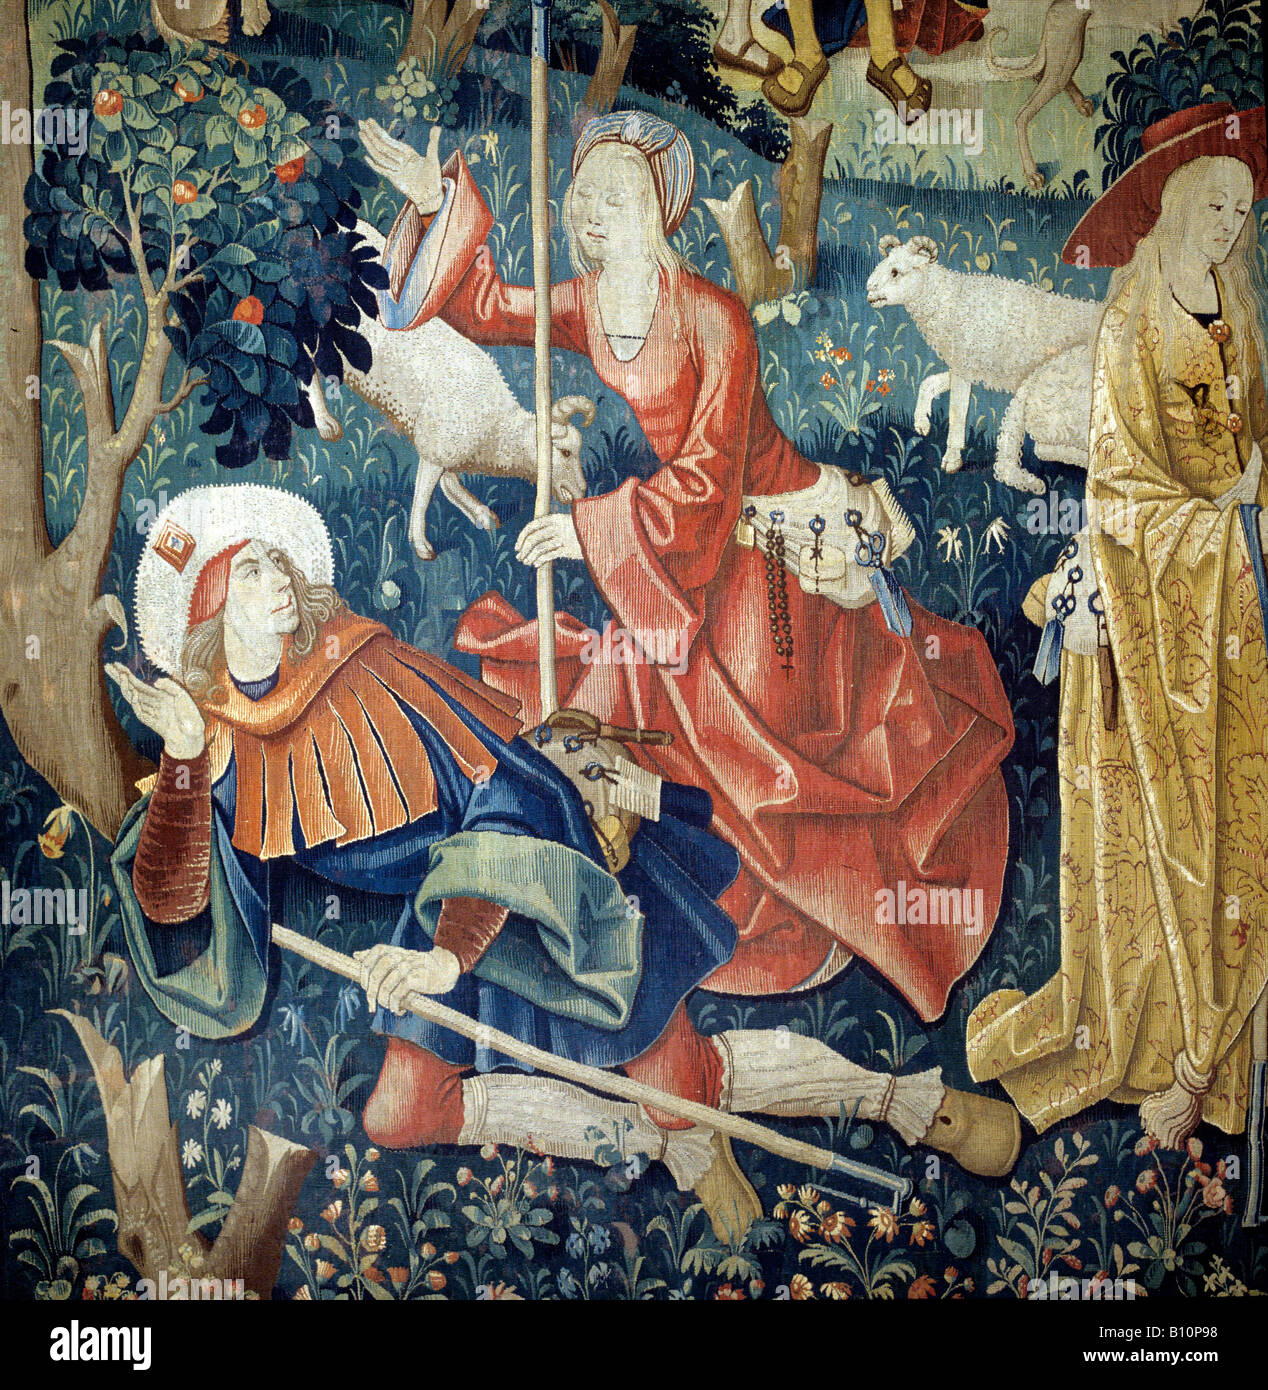 Tapisserie flamande. Shepherd et la femme au début du 16e siècle. Belgique Banque D'Images